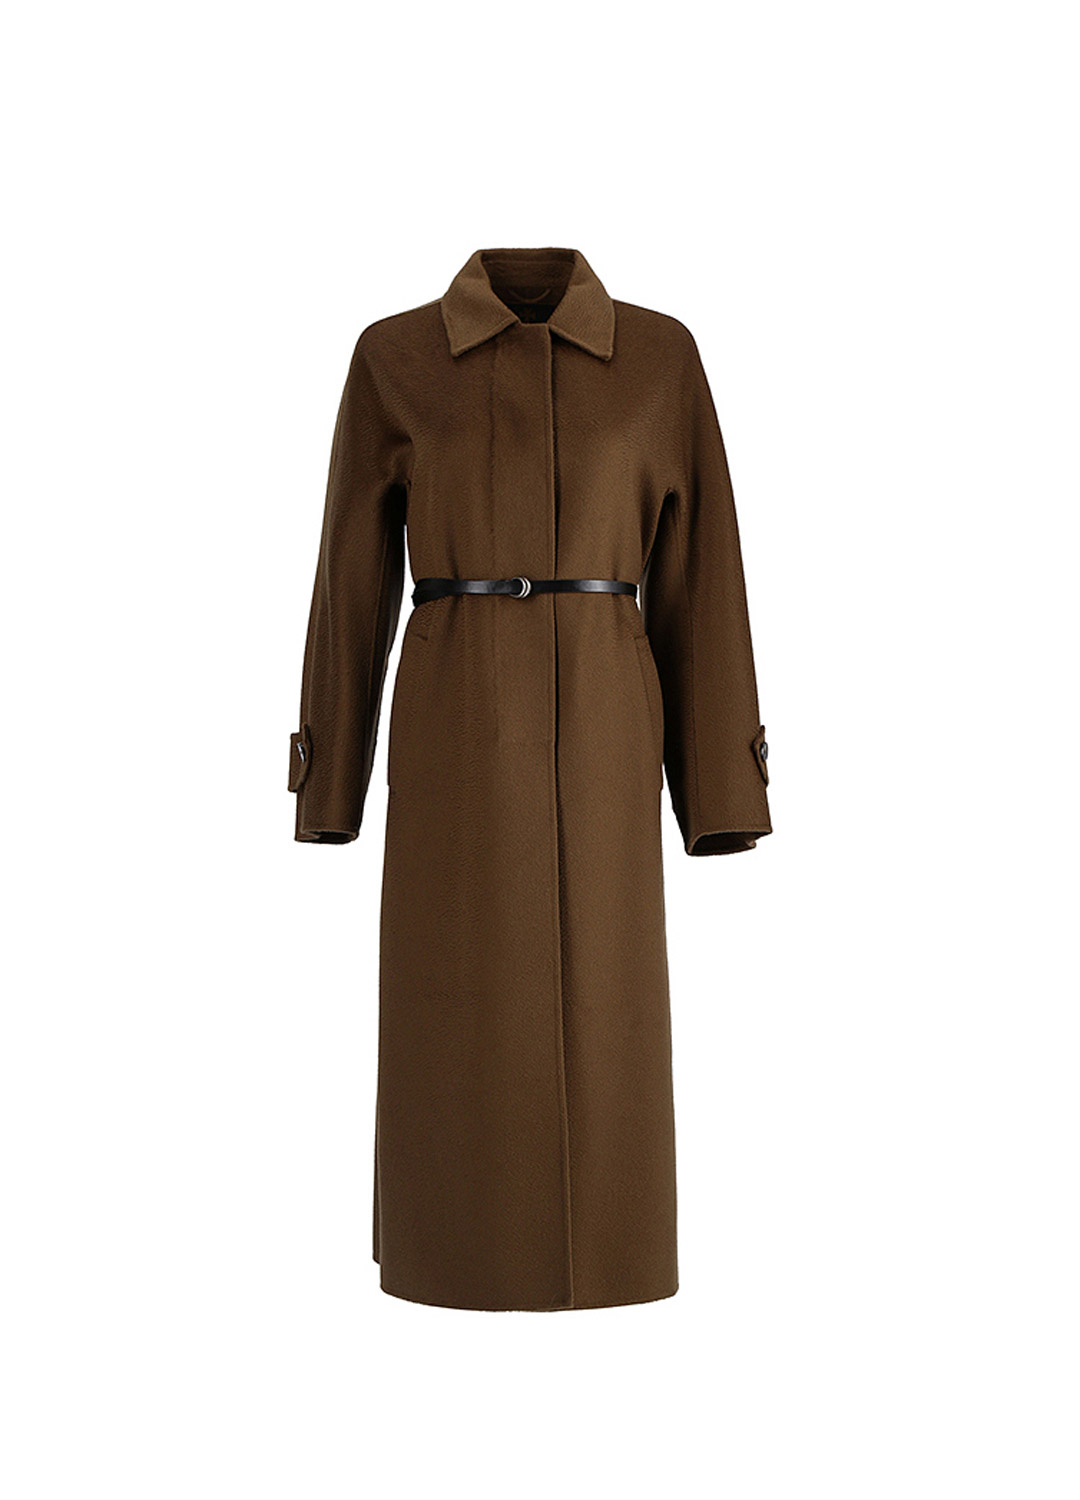 K Cashmere coat [Khaki]